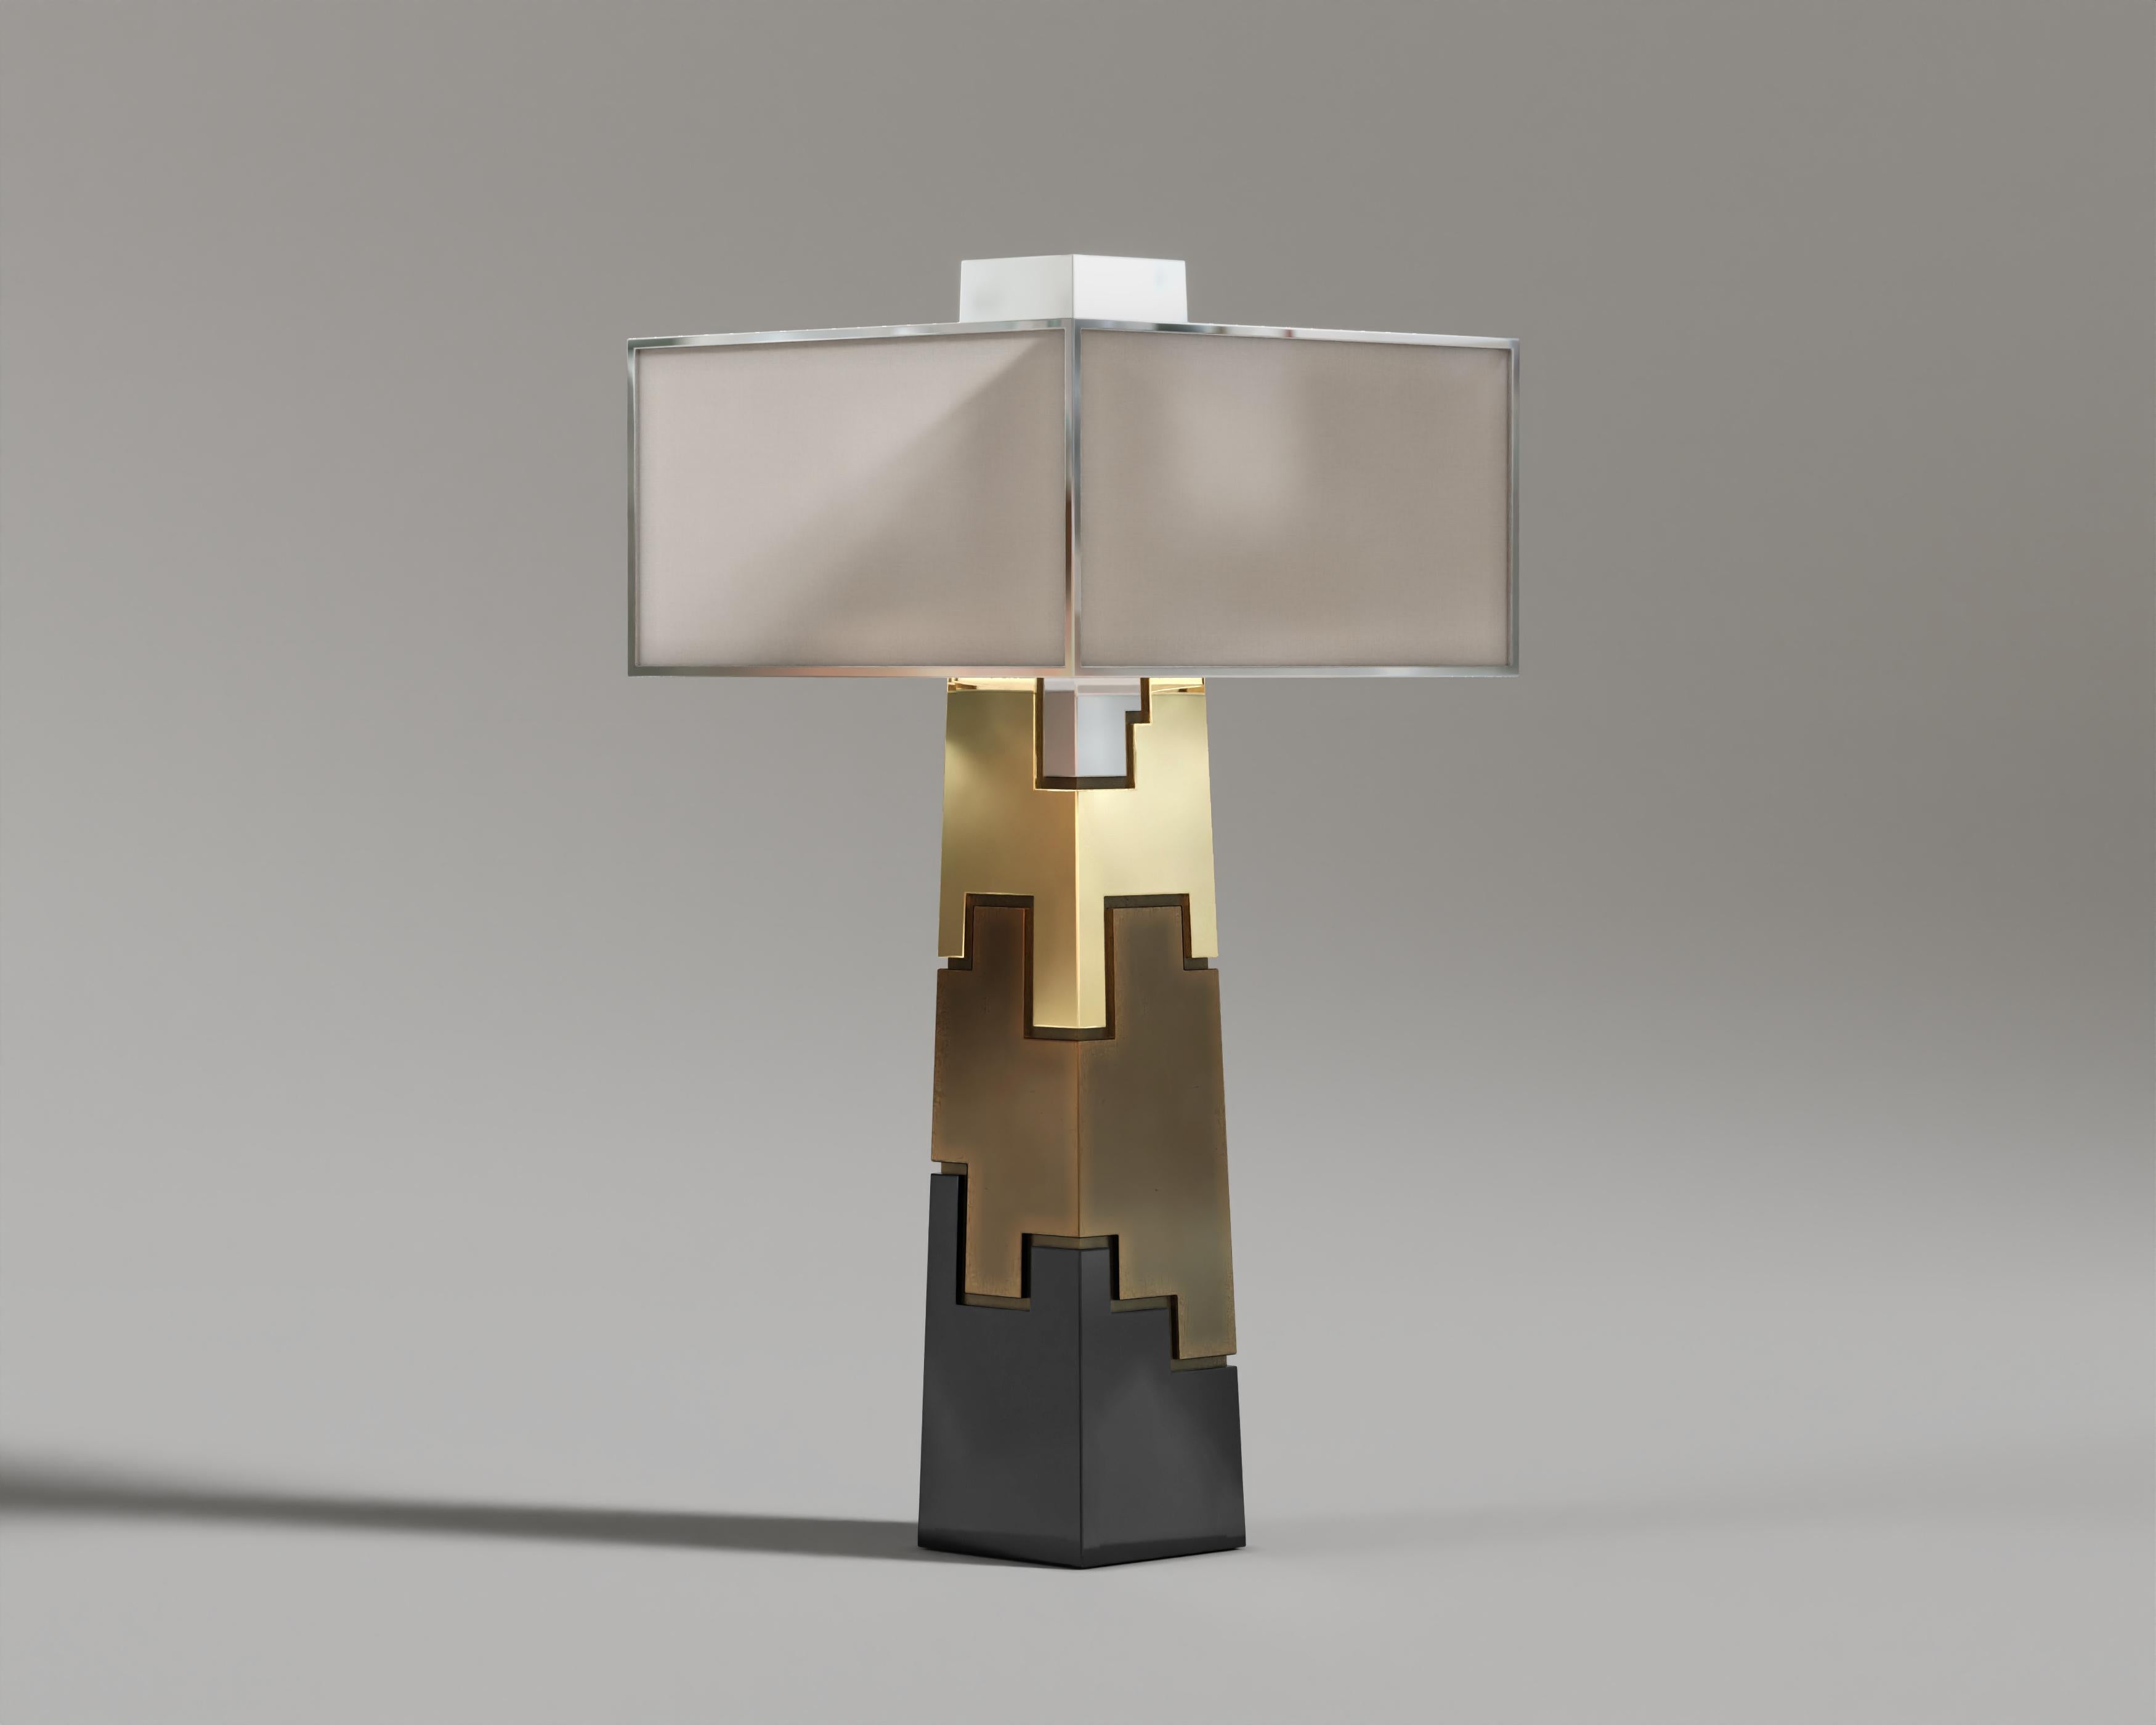 Lampe à poser Fragmin

Elegant lampe de table luxueuse MATERIAL, au design cylindrique épuré, fabriquée avec de la laque noire, des accents de bronze et de riches matériaux de placage pour une esthétique intemporelle et opulente.

Les matériaux et